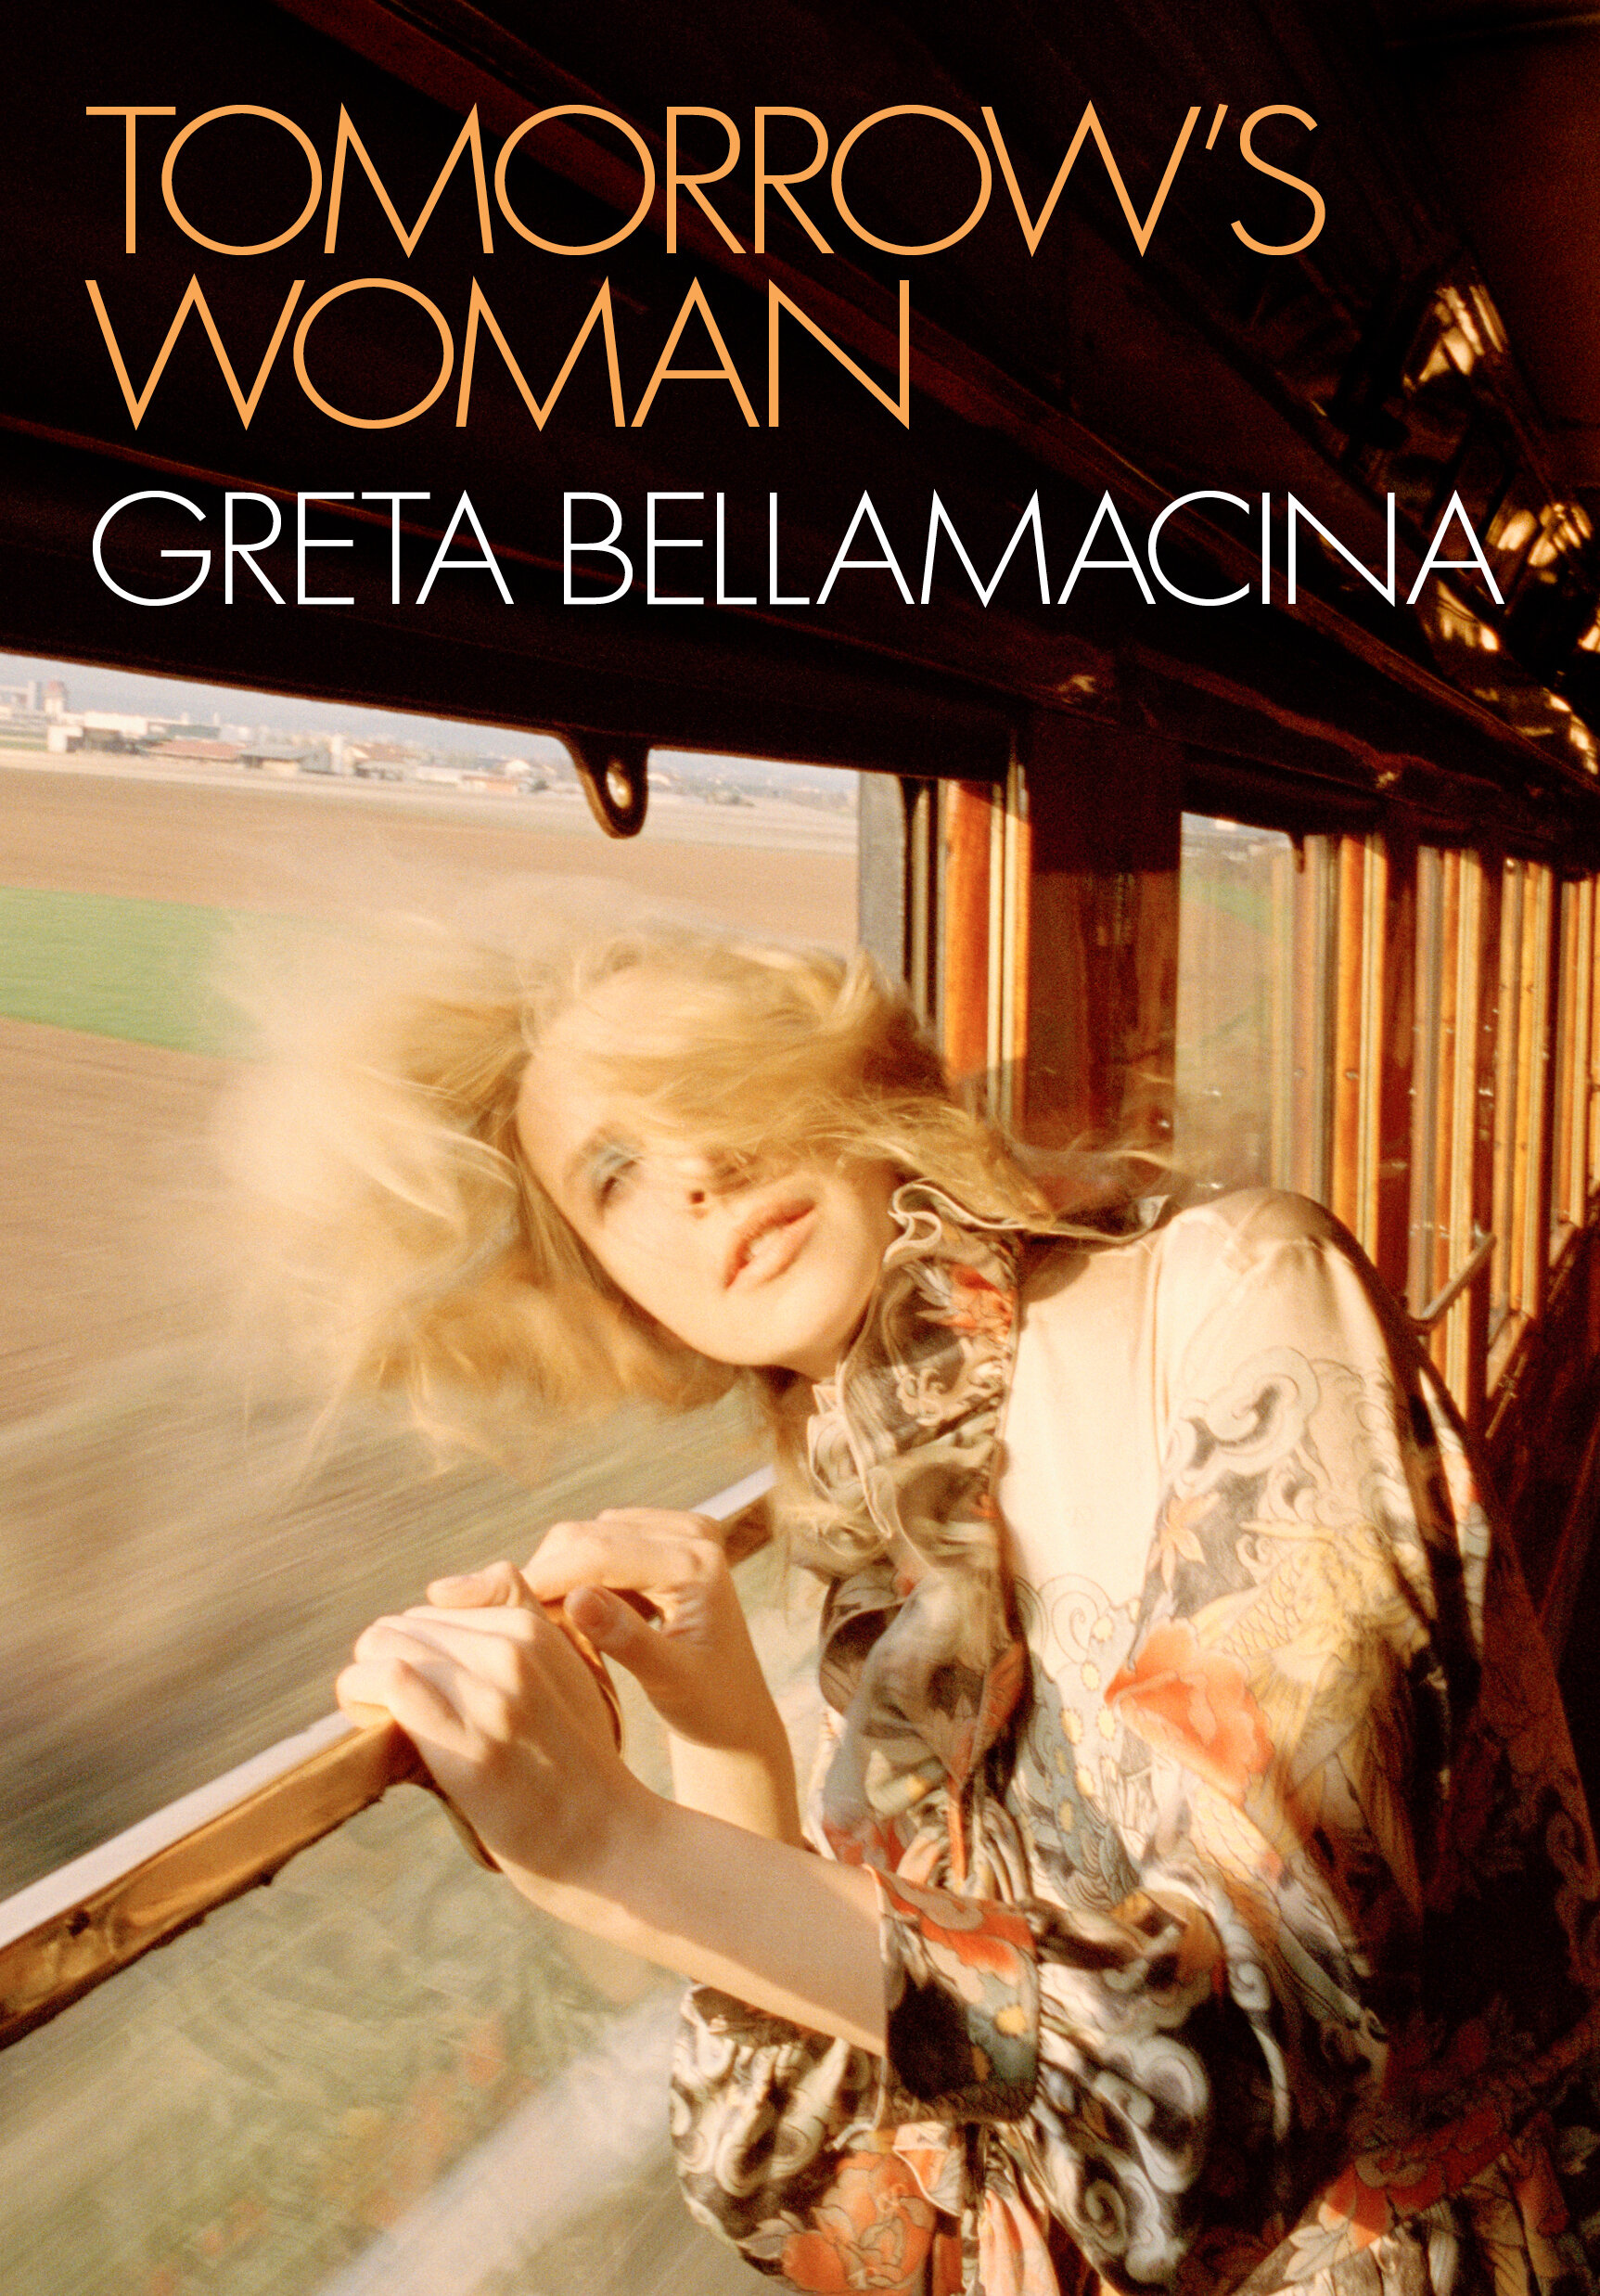 Greta Bellamacina